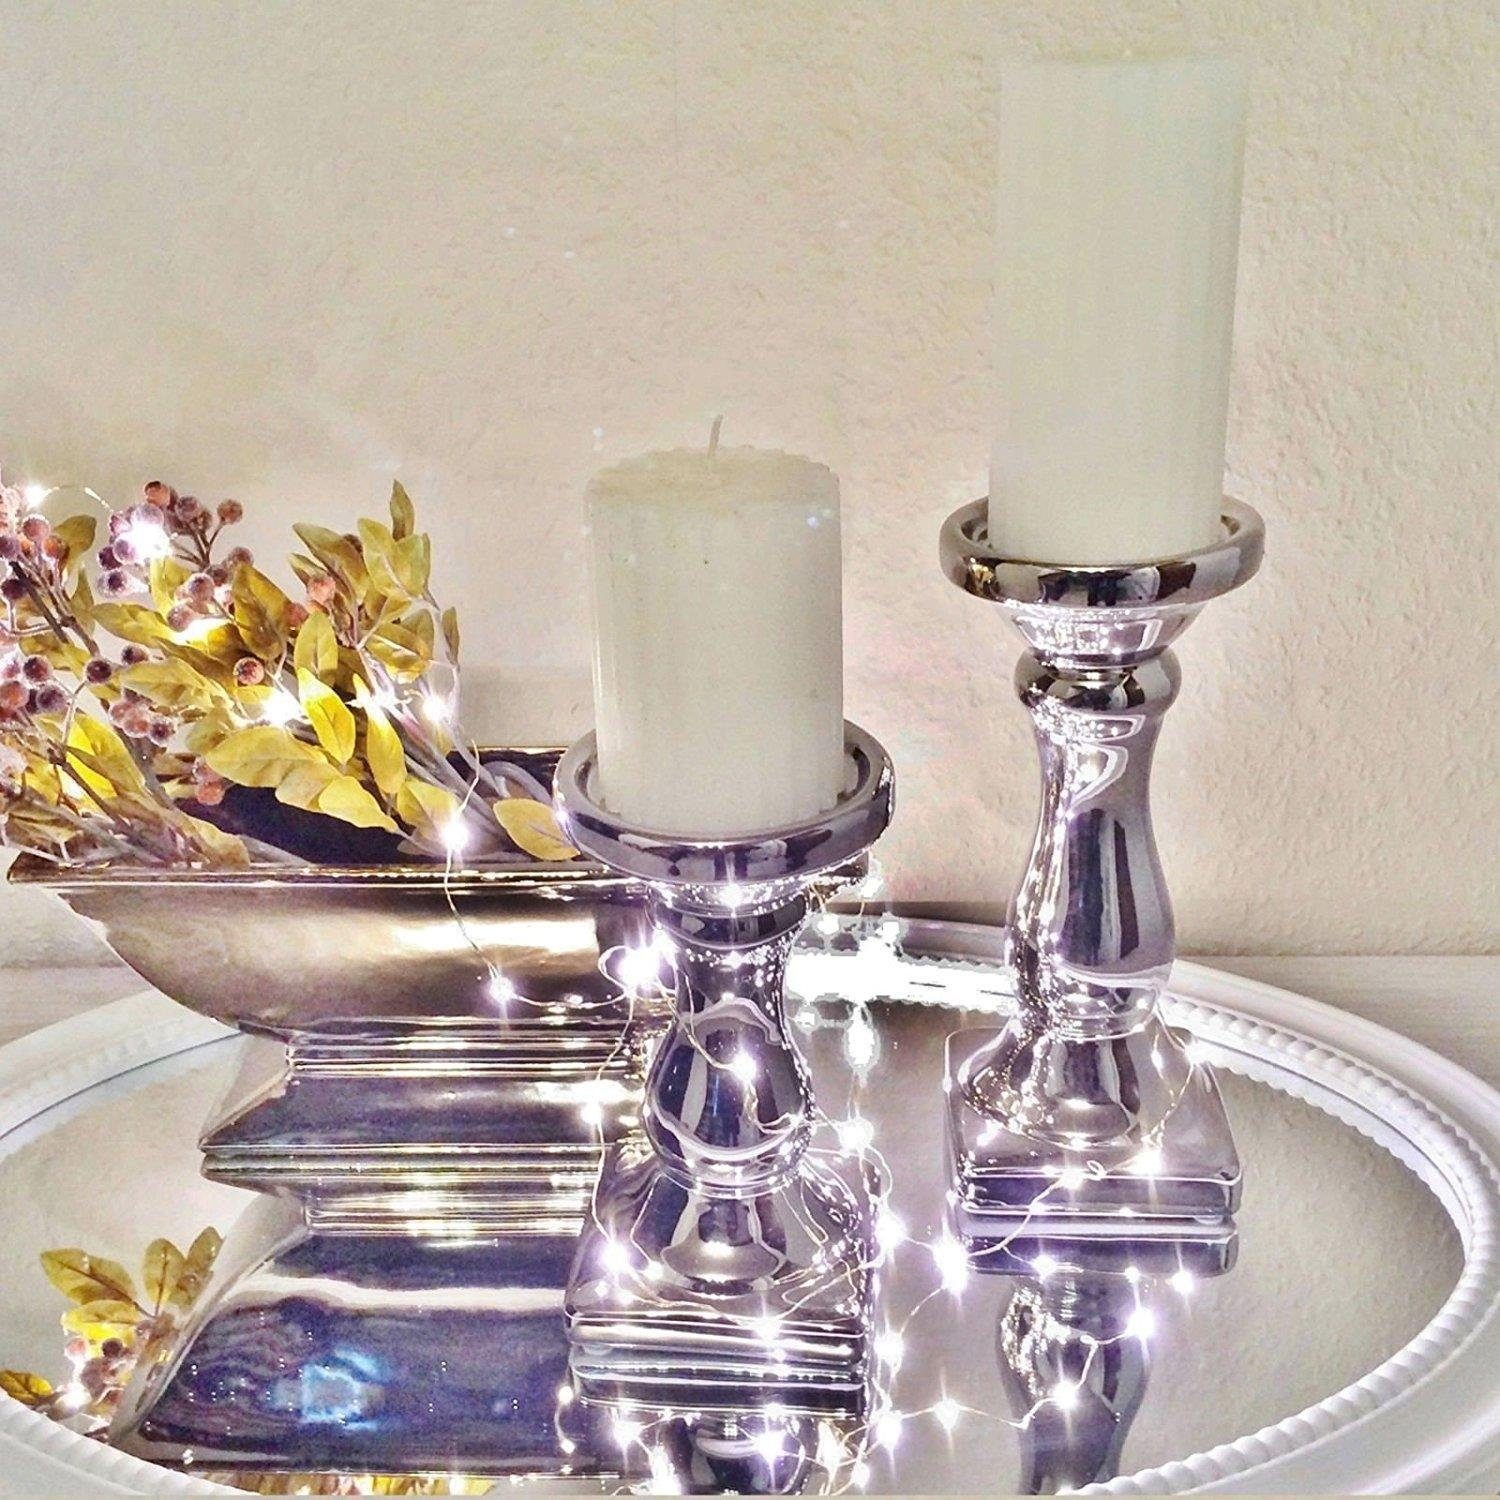 【Empfehlung】 DRULINE Kerzenhalter Weiß Silber Keramik Kerzenleuchter Kerzenständer